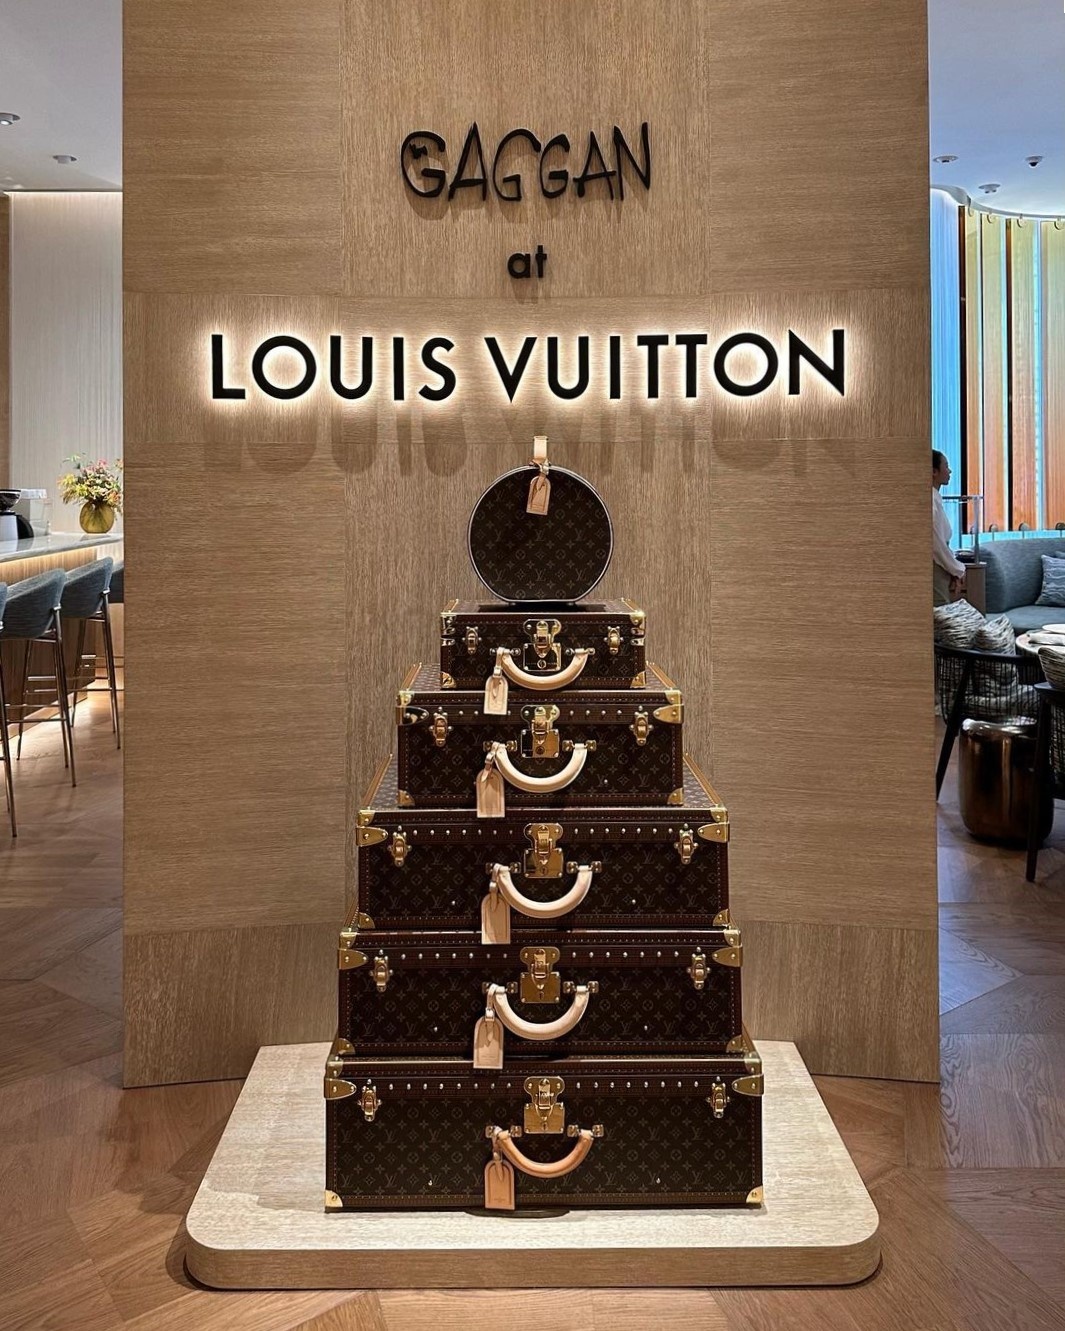 Độ xa hoa của nhà hàng Louis Vuitton đầu tiên ở Đông Nam Á - ảnh 2